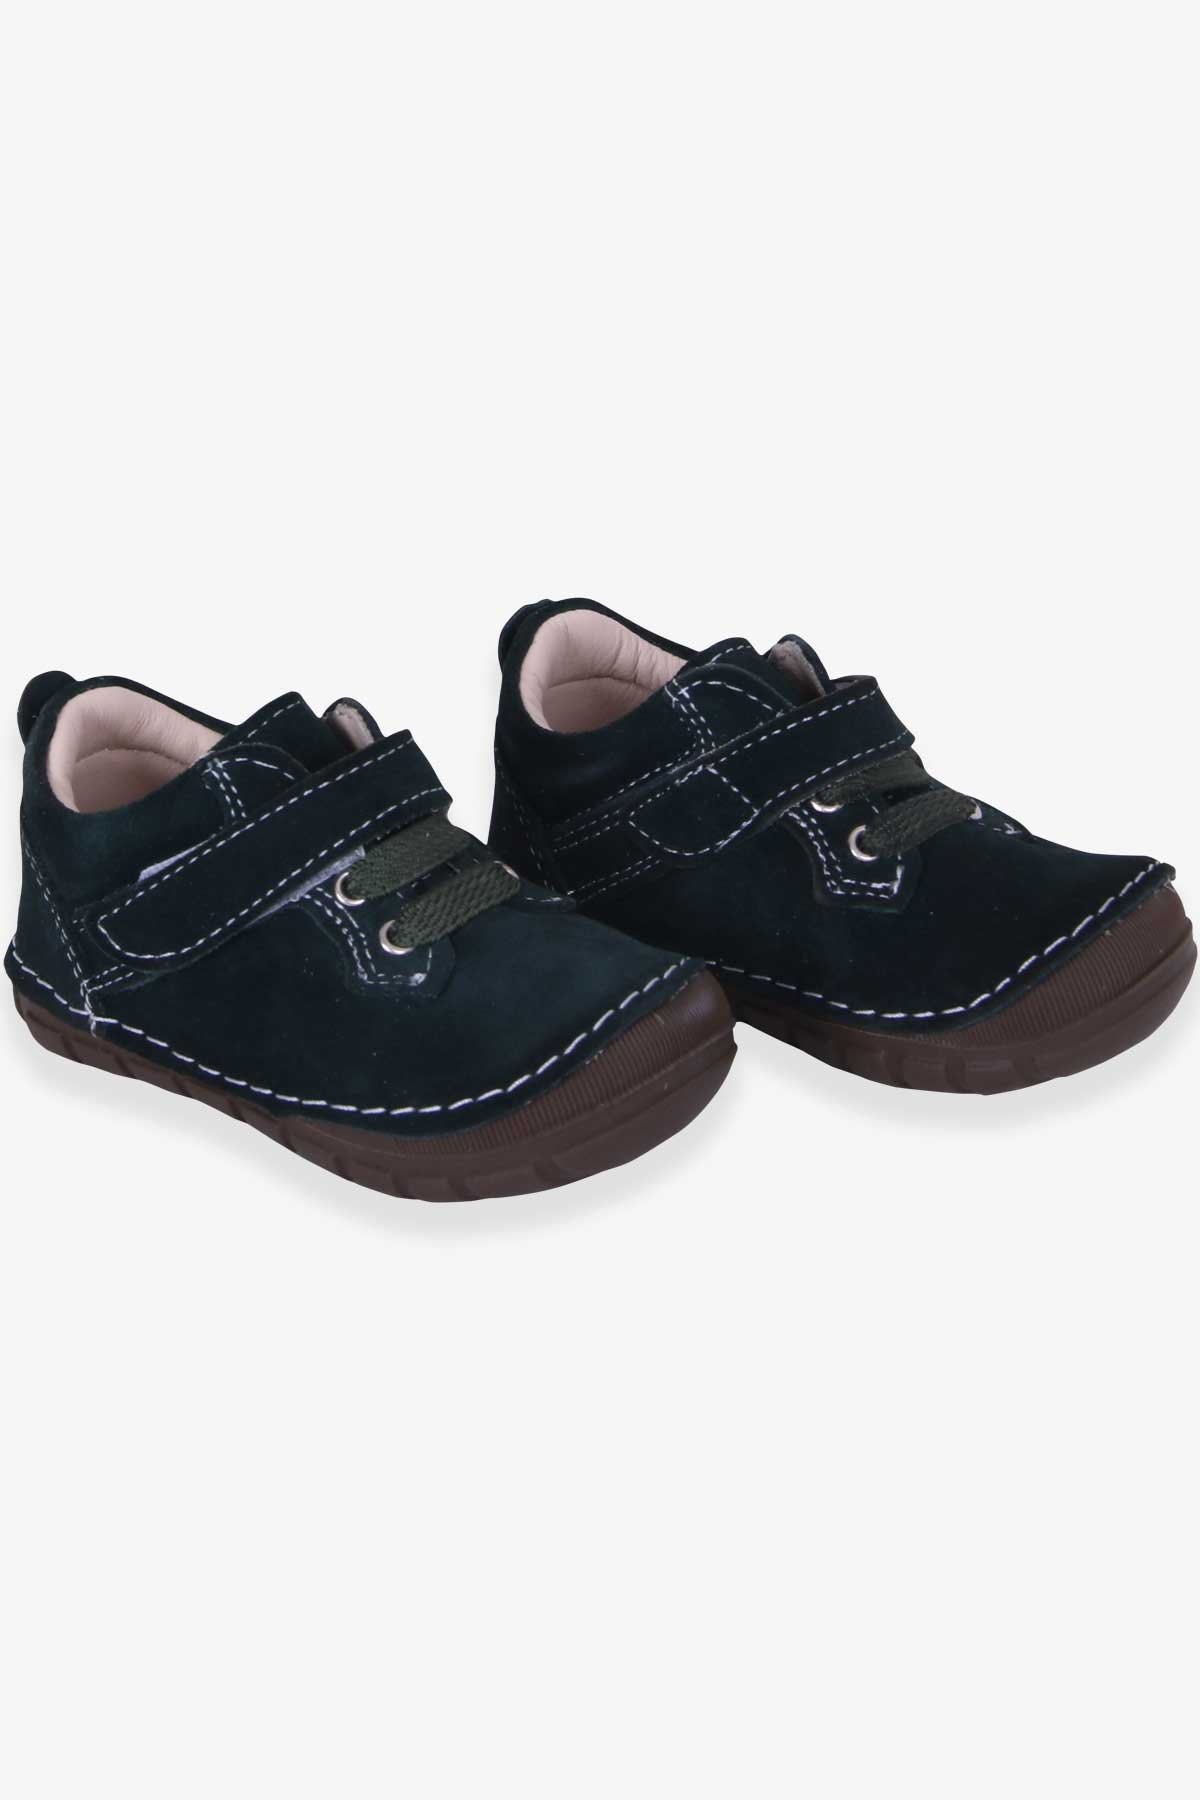 Erkek Çocuk Cırtlı Süet Ayakkabı Koyu Yeşil 19-22 Numara - Tatlı Bebek  Ayakkabıları | Breeze